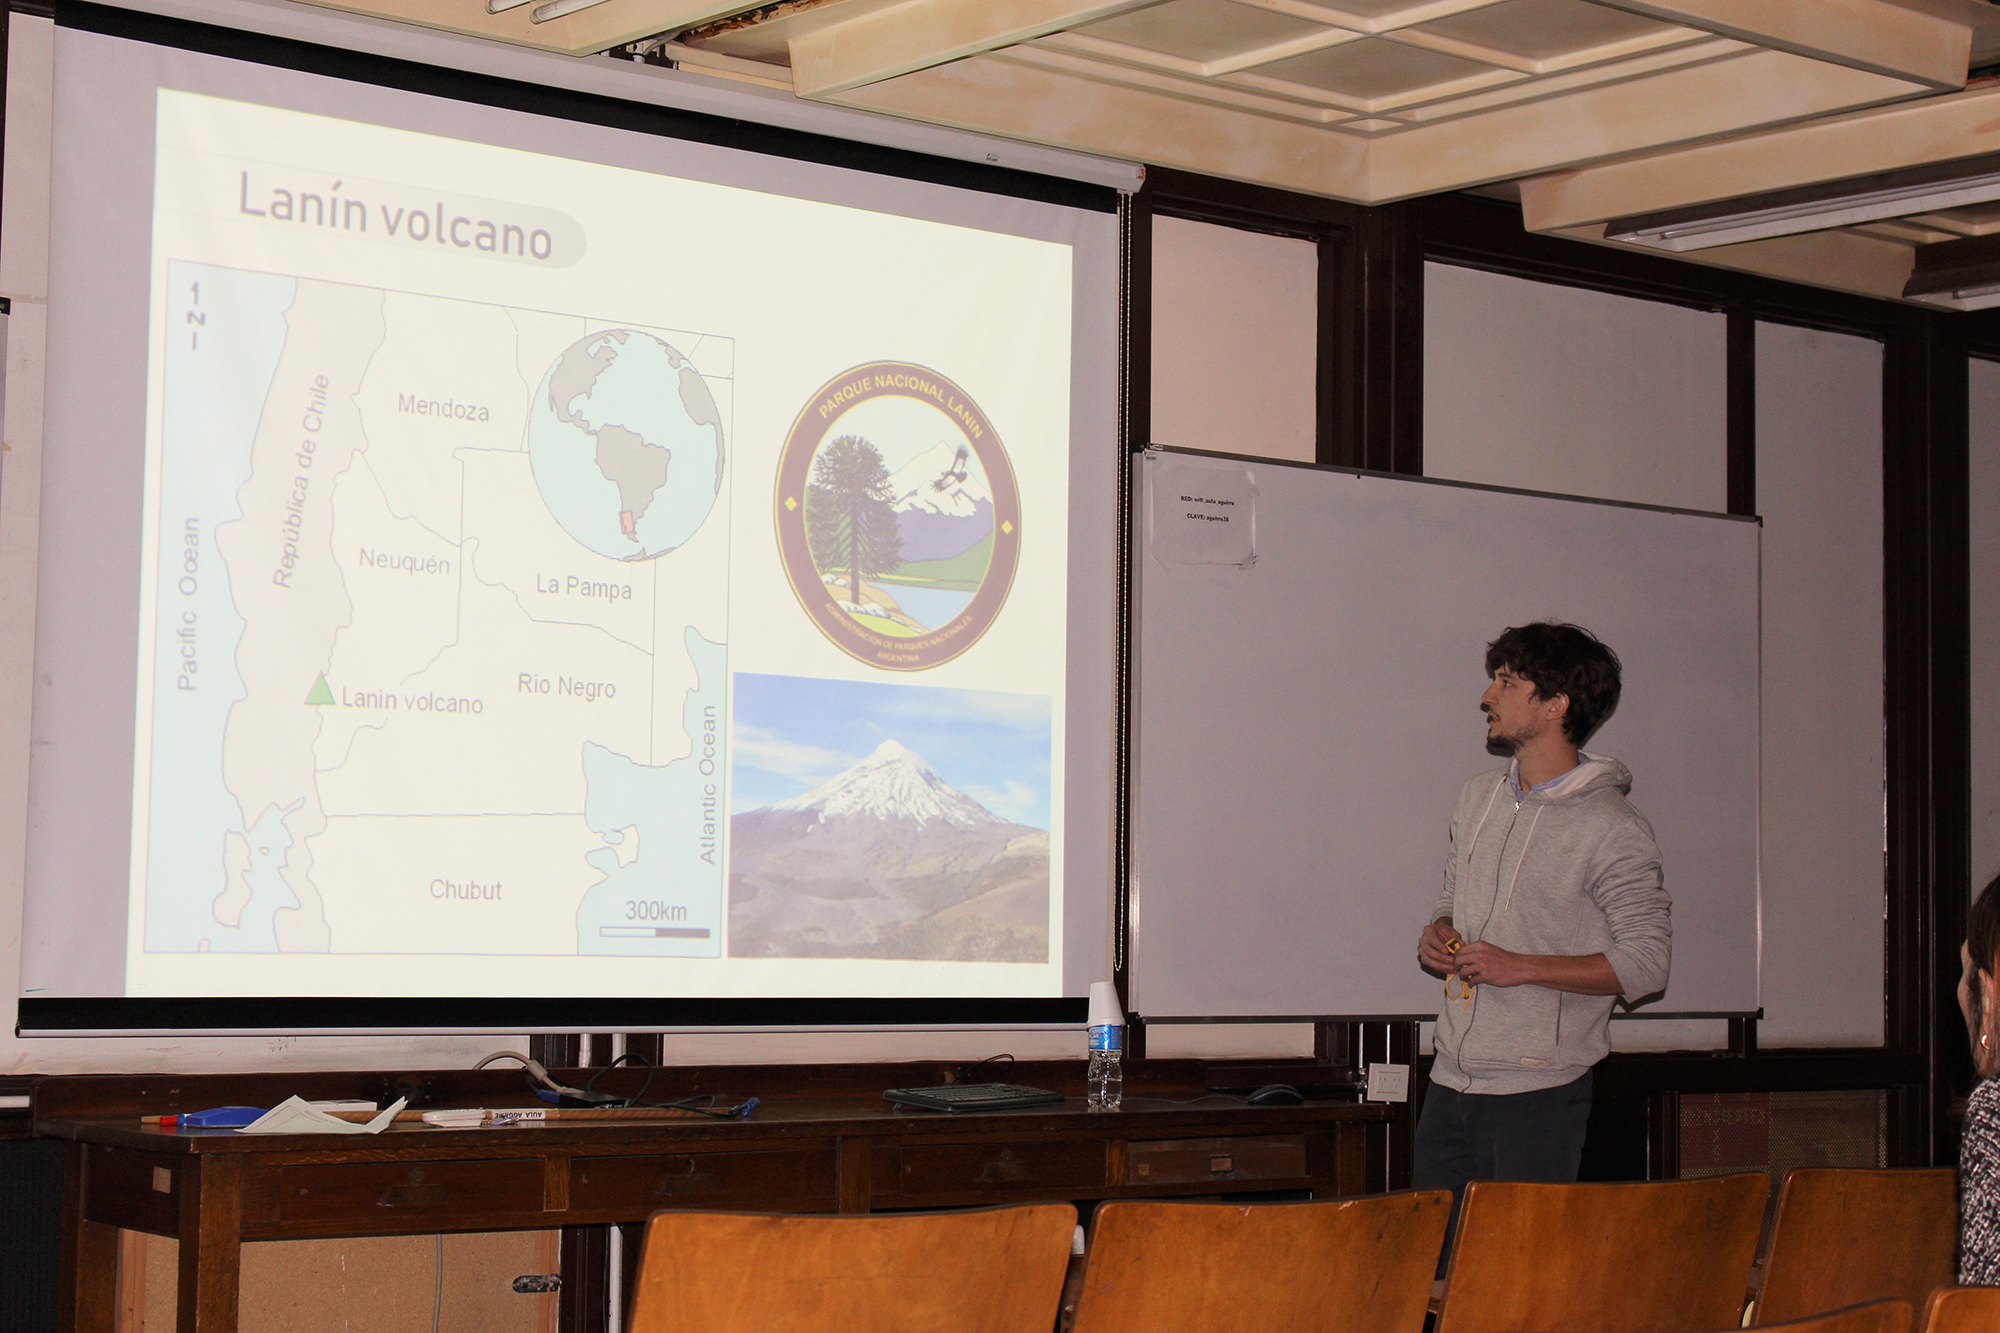 En el taller, Tomas Fuentes presentó a Wörner su tesis de doctorado sobre el volcán argentino Lanin